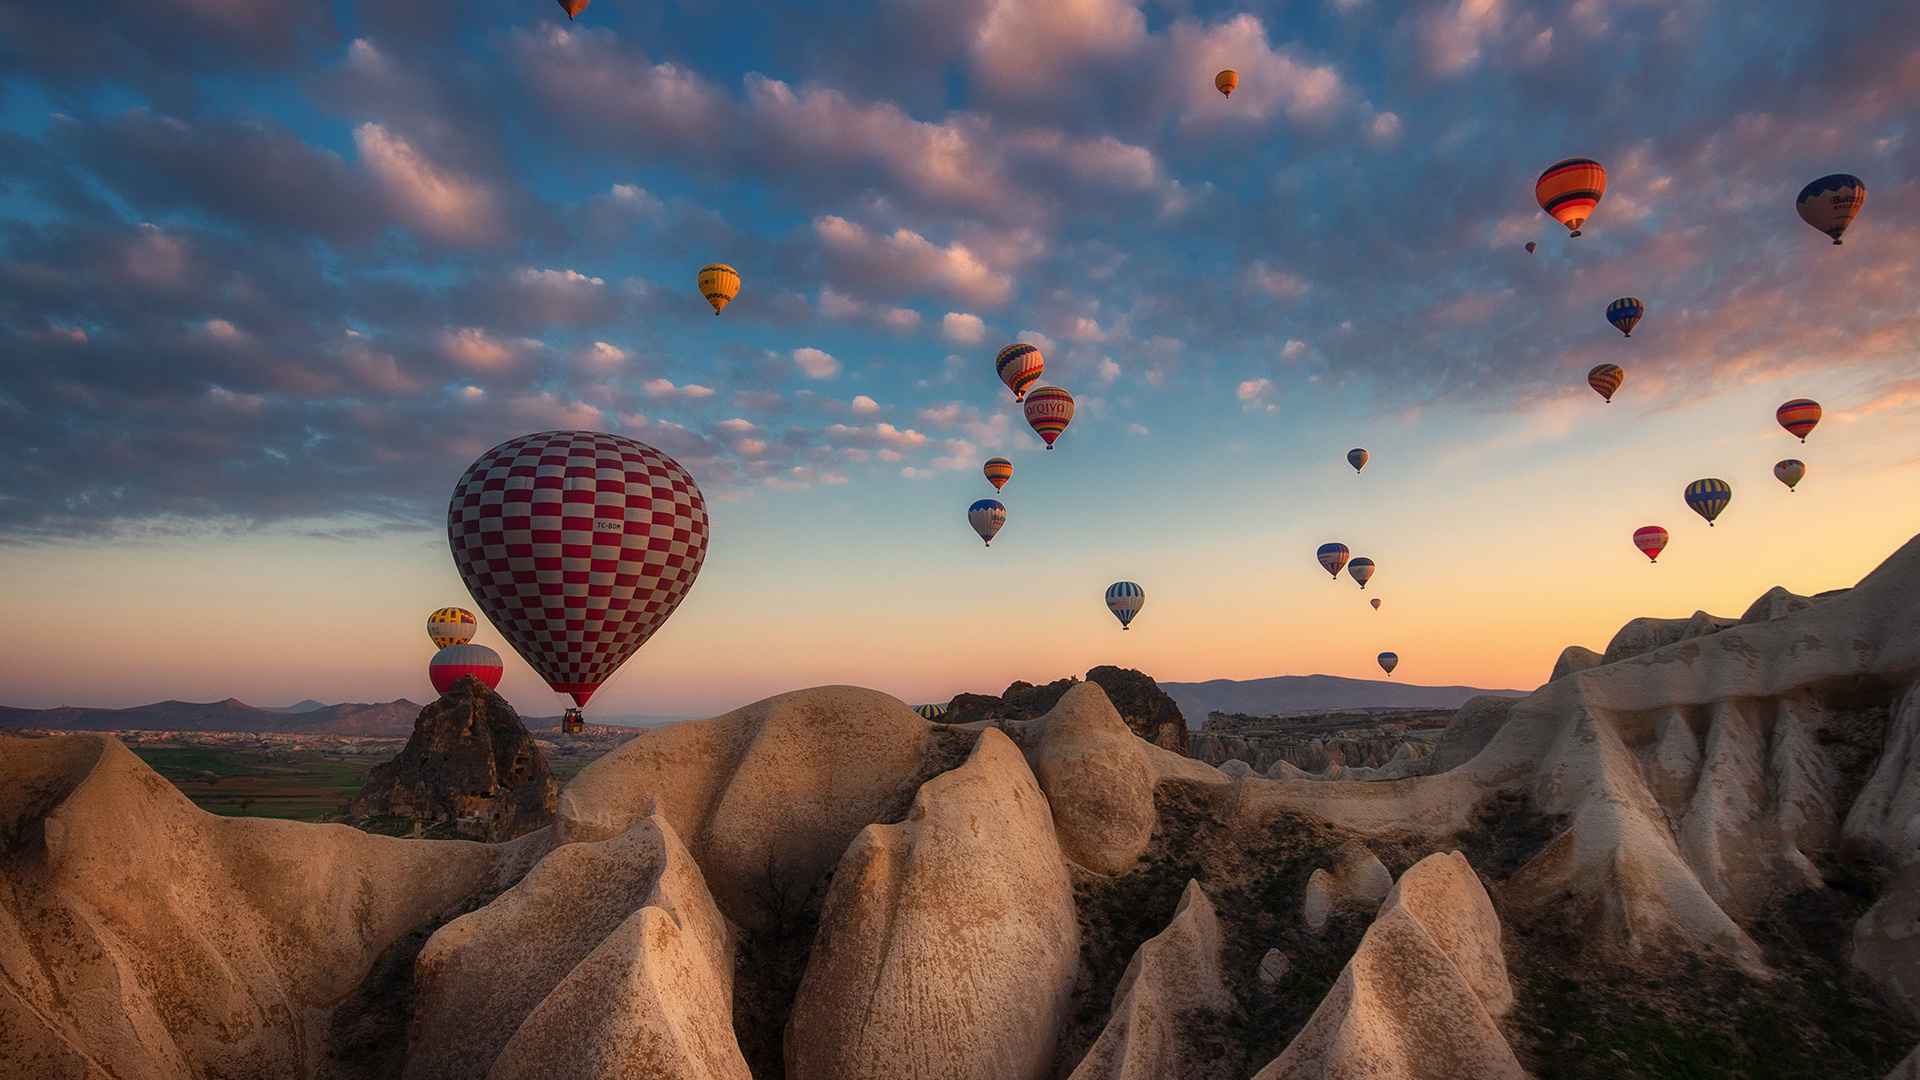 каппадокия фото с воздушными шарами